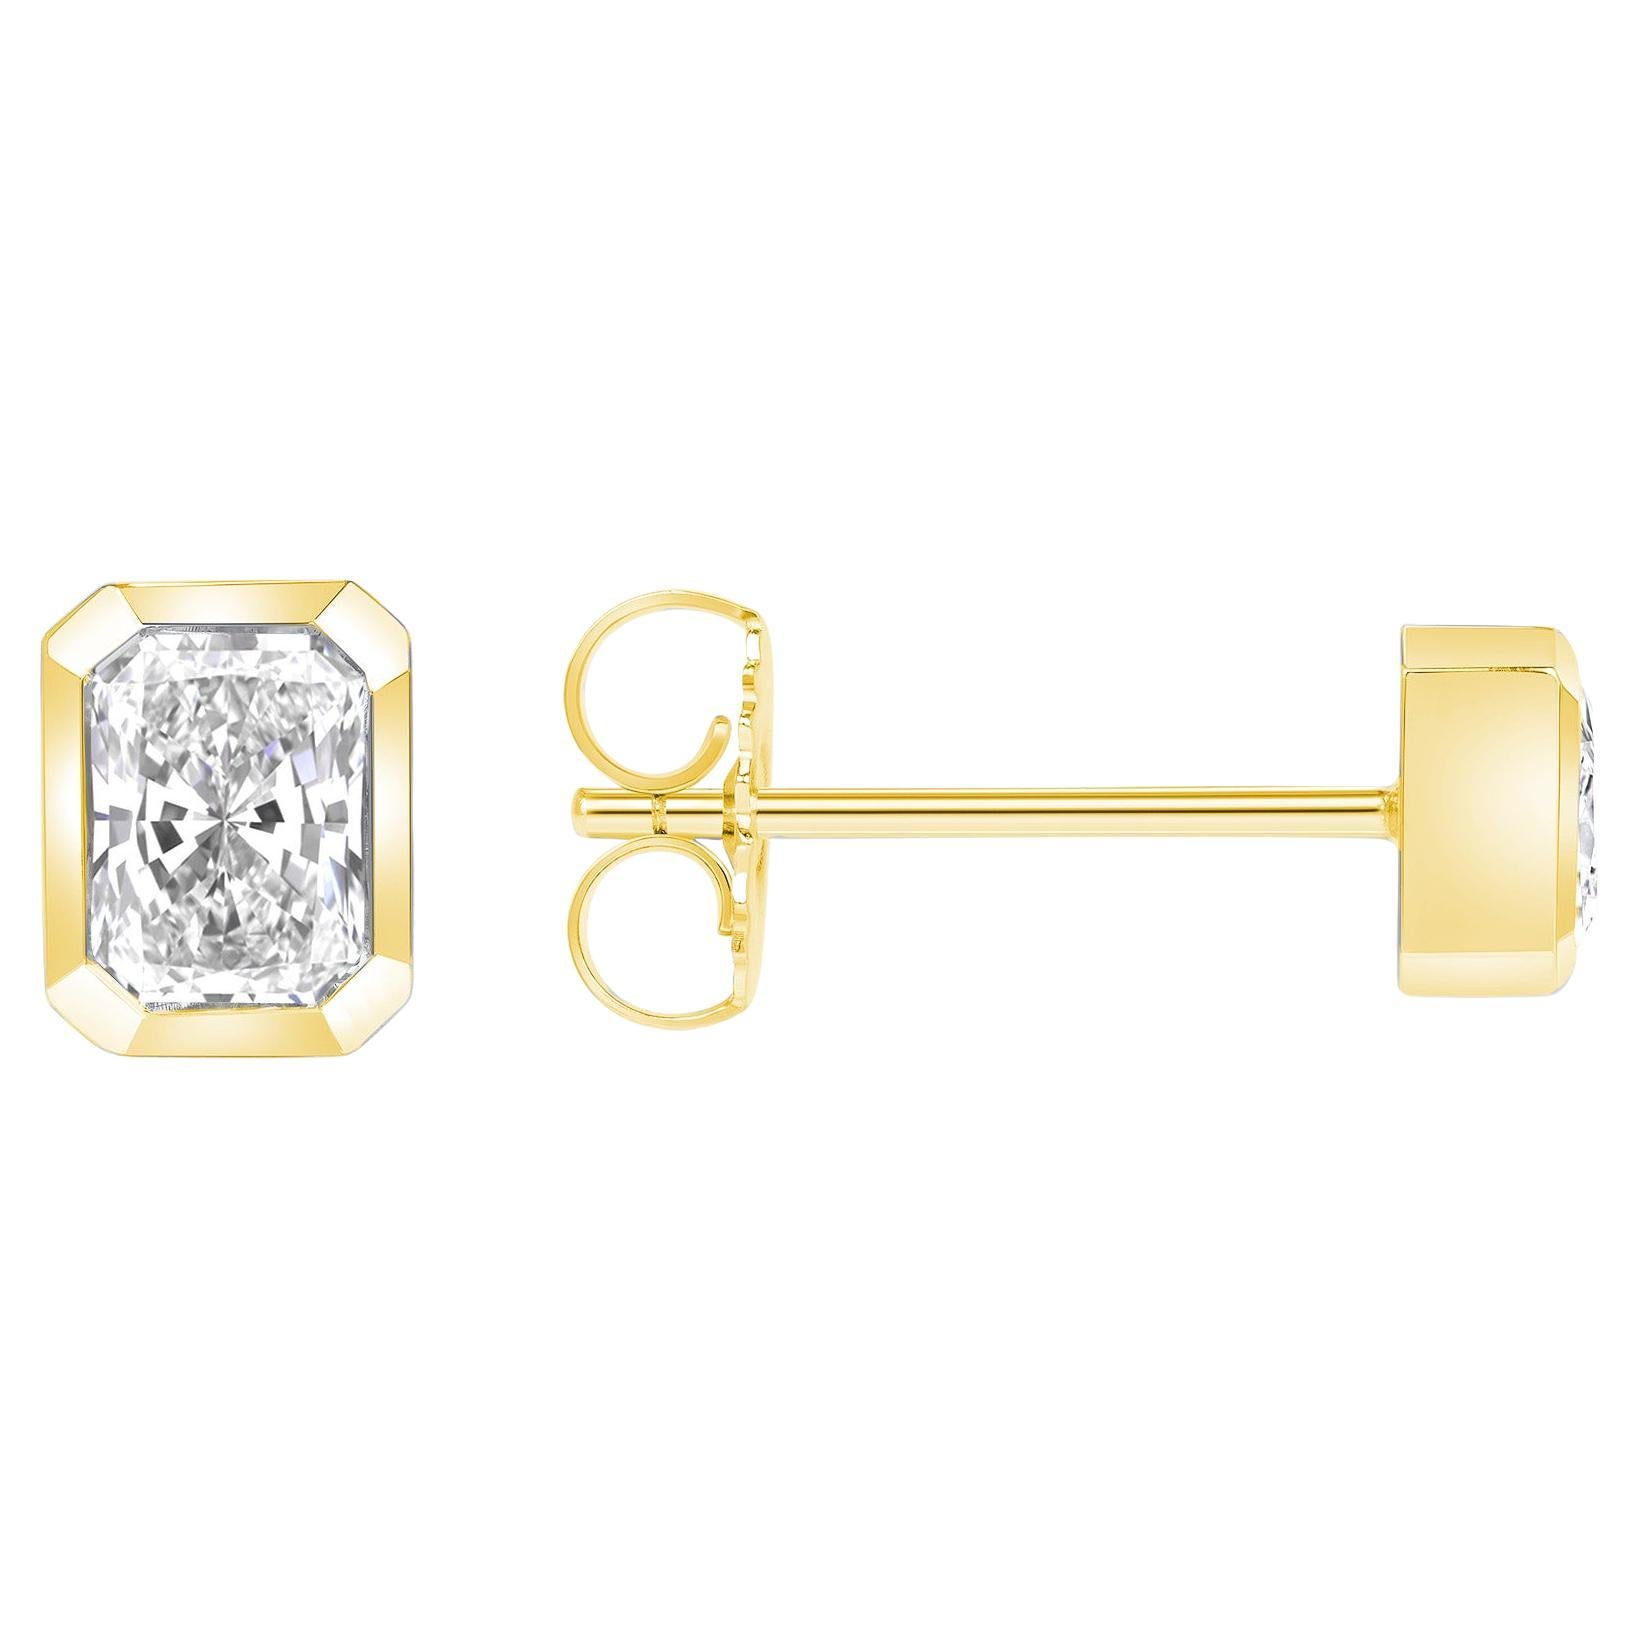 Boucle d'oreille en or jaune 18 carats avec diamant radiant de 0,90 ctw, sertie d'un chaton et faite à la main.